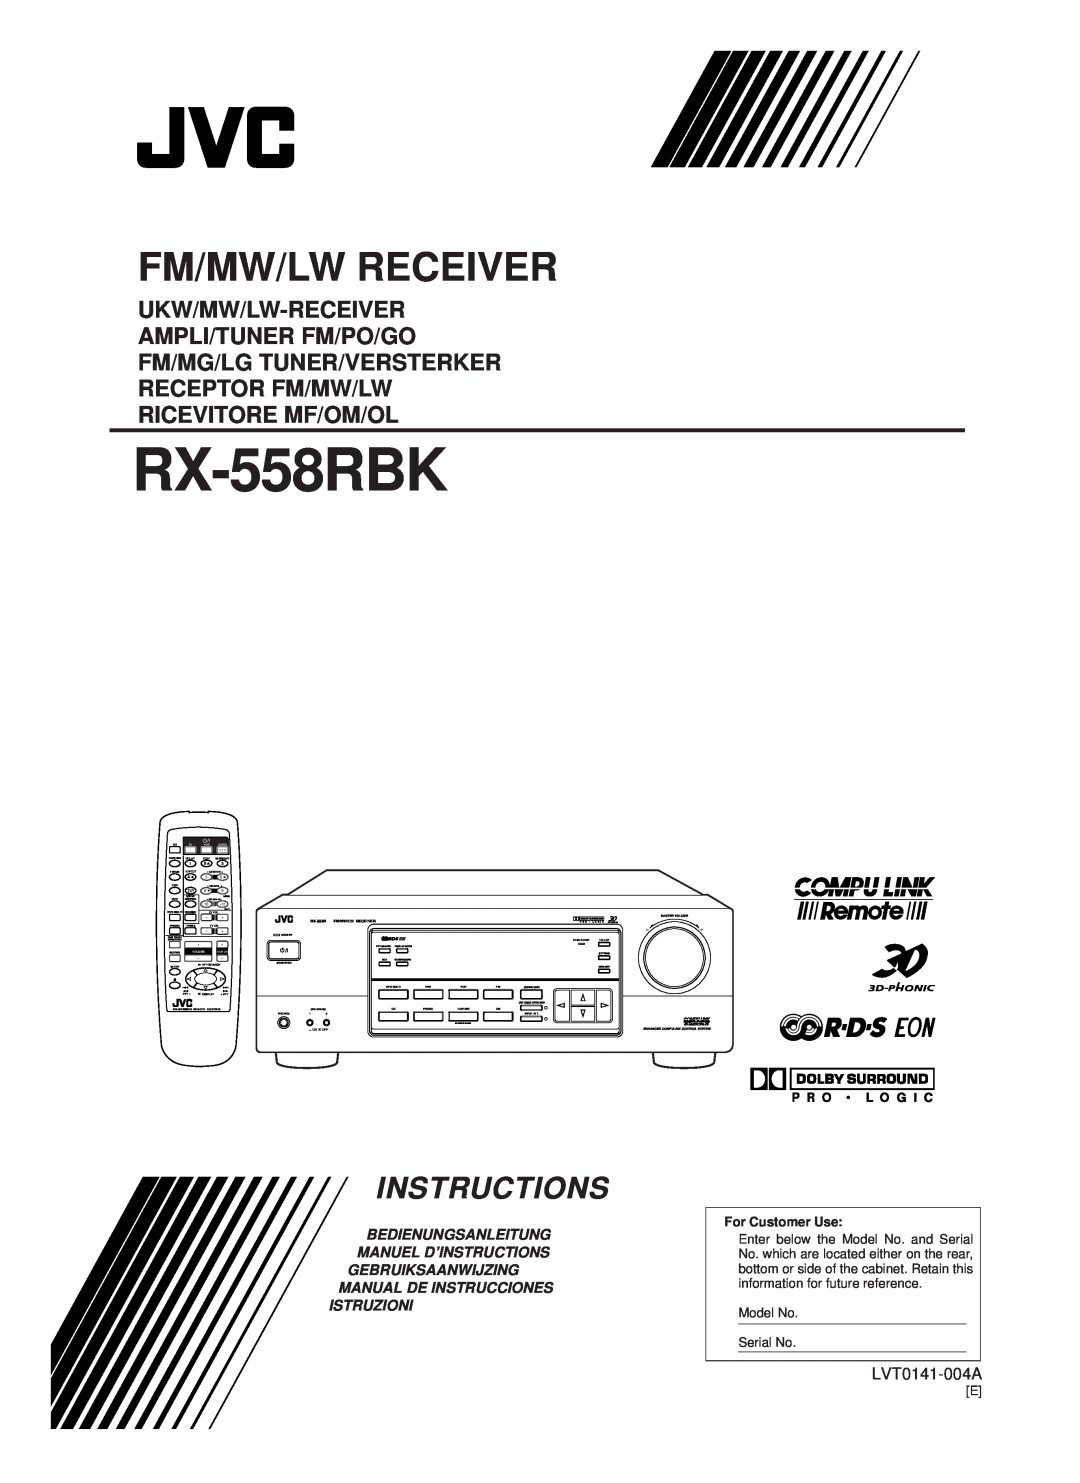 JVC RX-558RBK manual Ukw/Mw/Lw-Receiver, Fm/Mw/Lw Receiver, Instructions, LVT0141-004A, RX-558RFM/MW/LW RECEIVER, On Ñ Off 